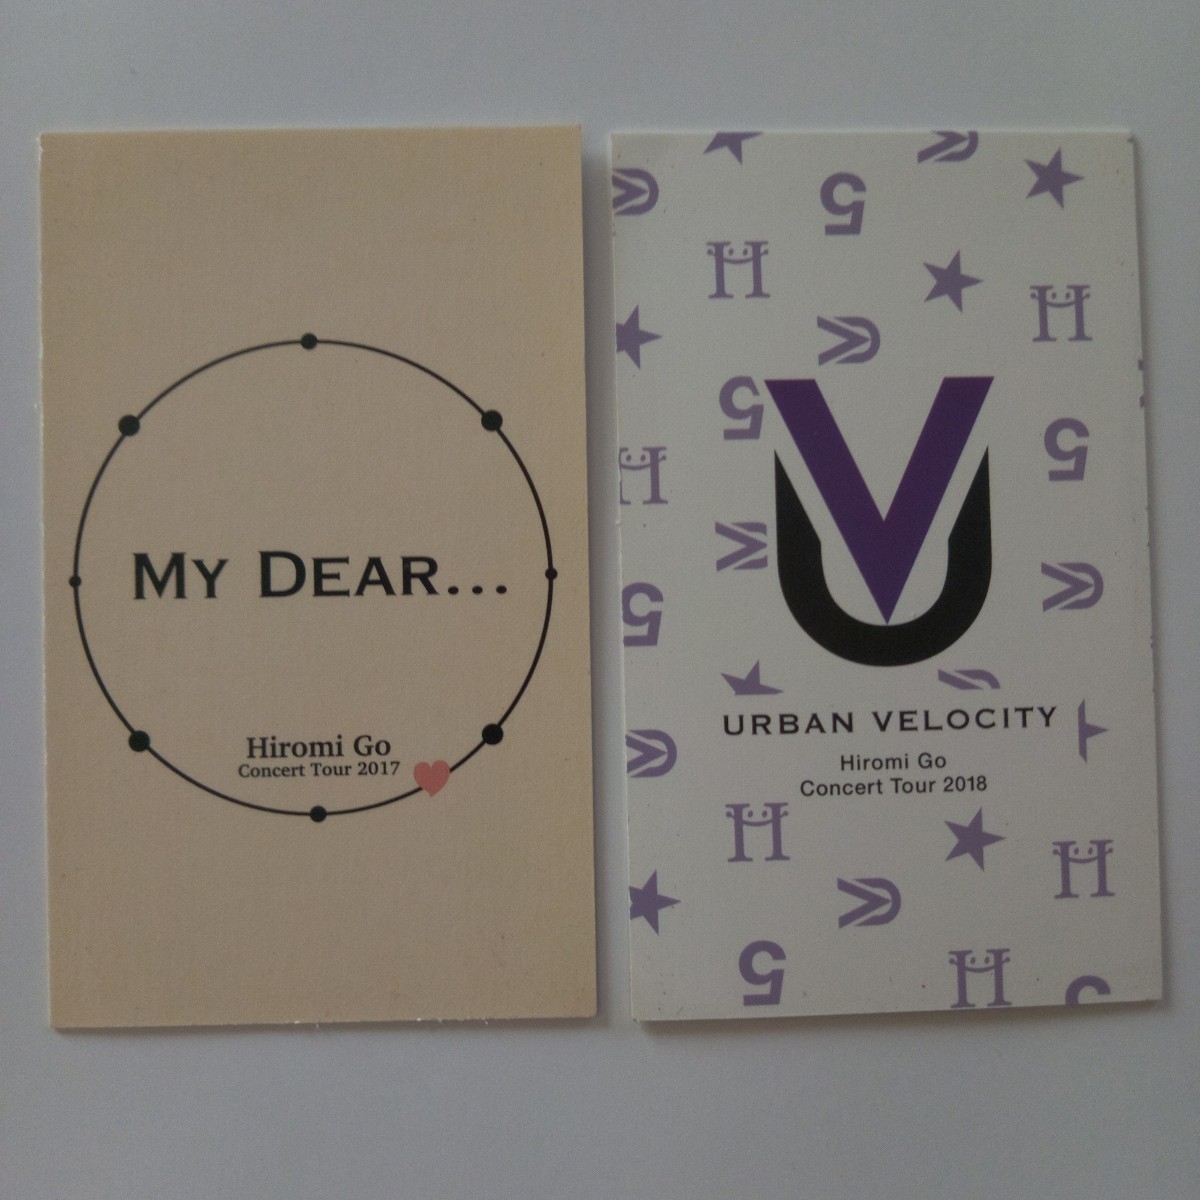  Go Hiromi коллекционная карточка 2 листов / коллекционные карточки /My Dear/URBAN VELOCITY